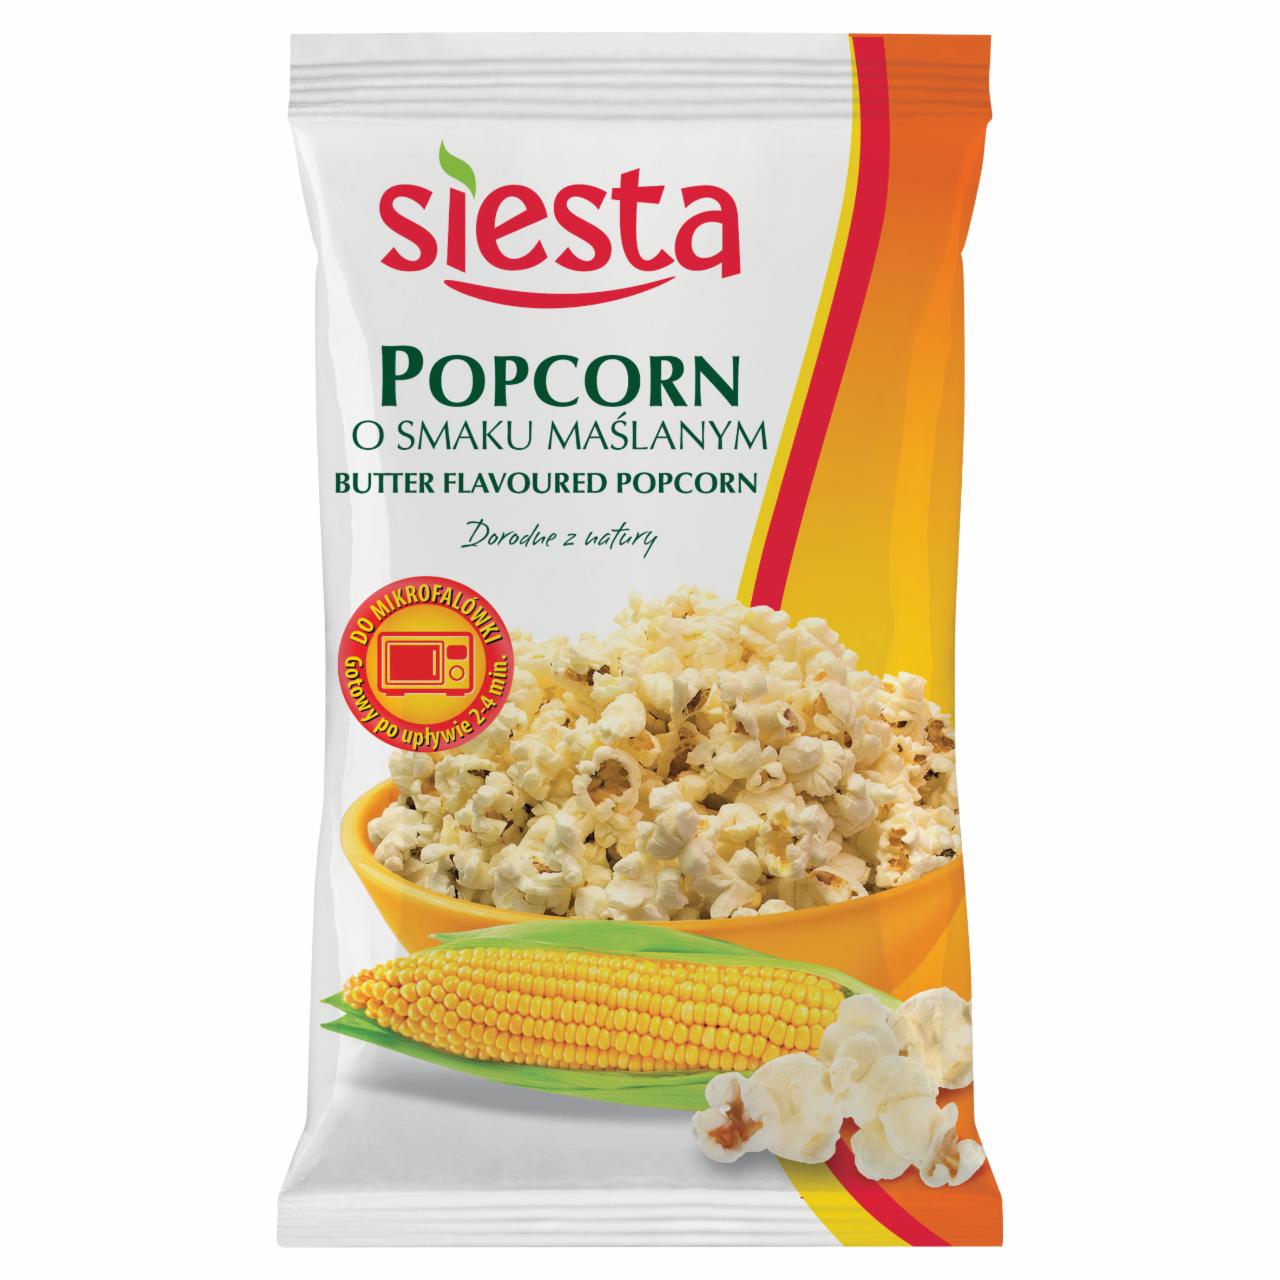 Zdjęcia - Siesta Popcorn o smaku maślanym do mikrofalówki 90 g